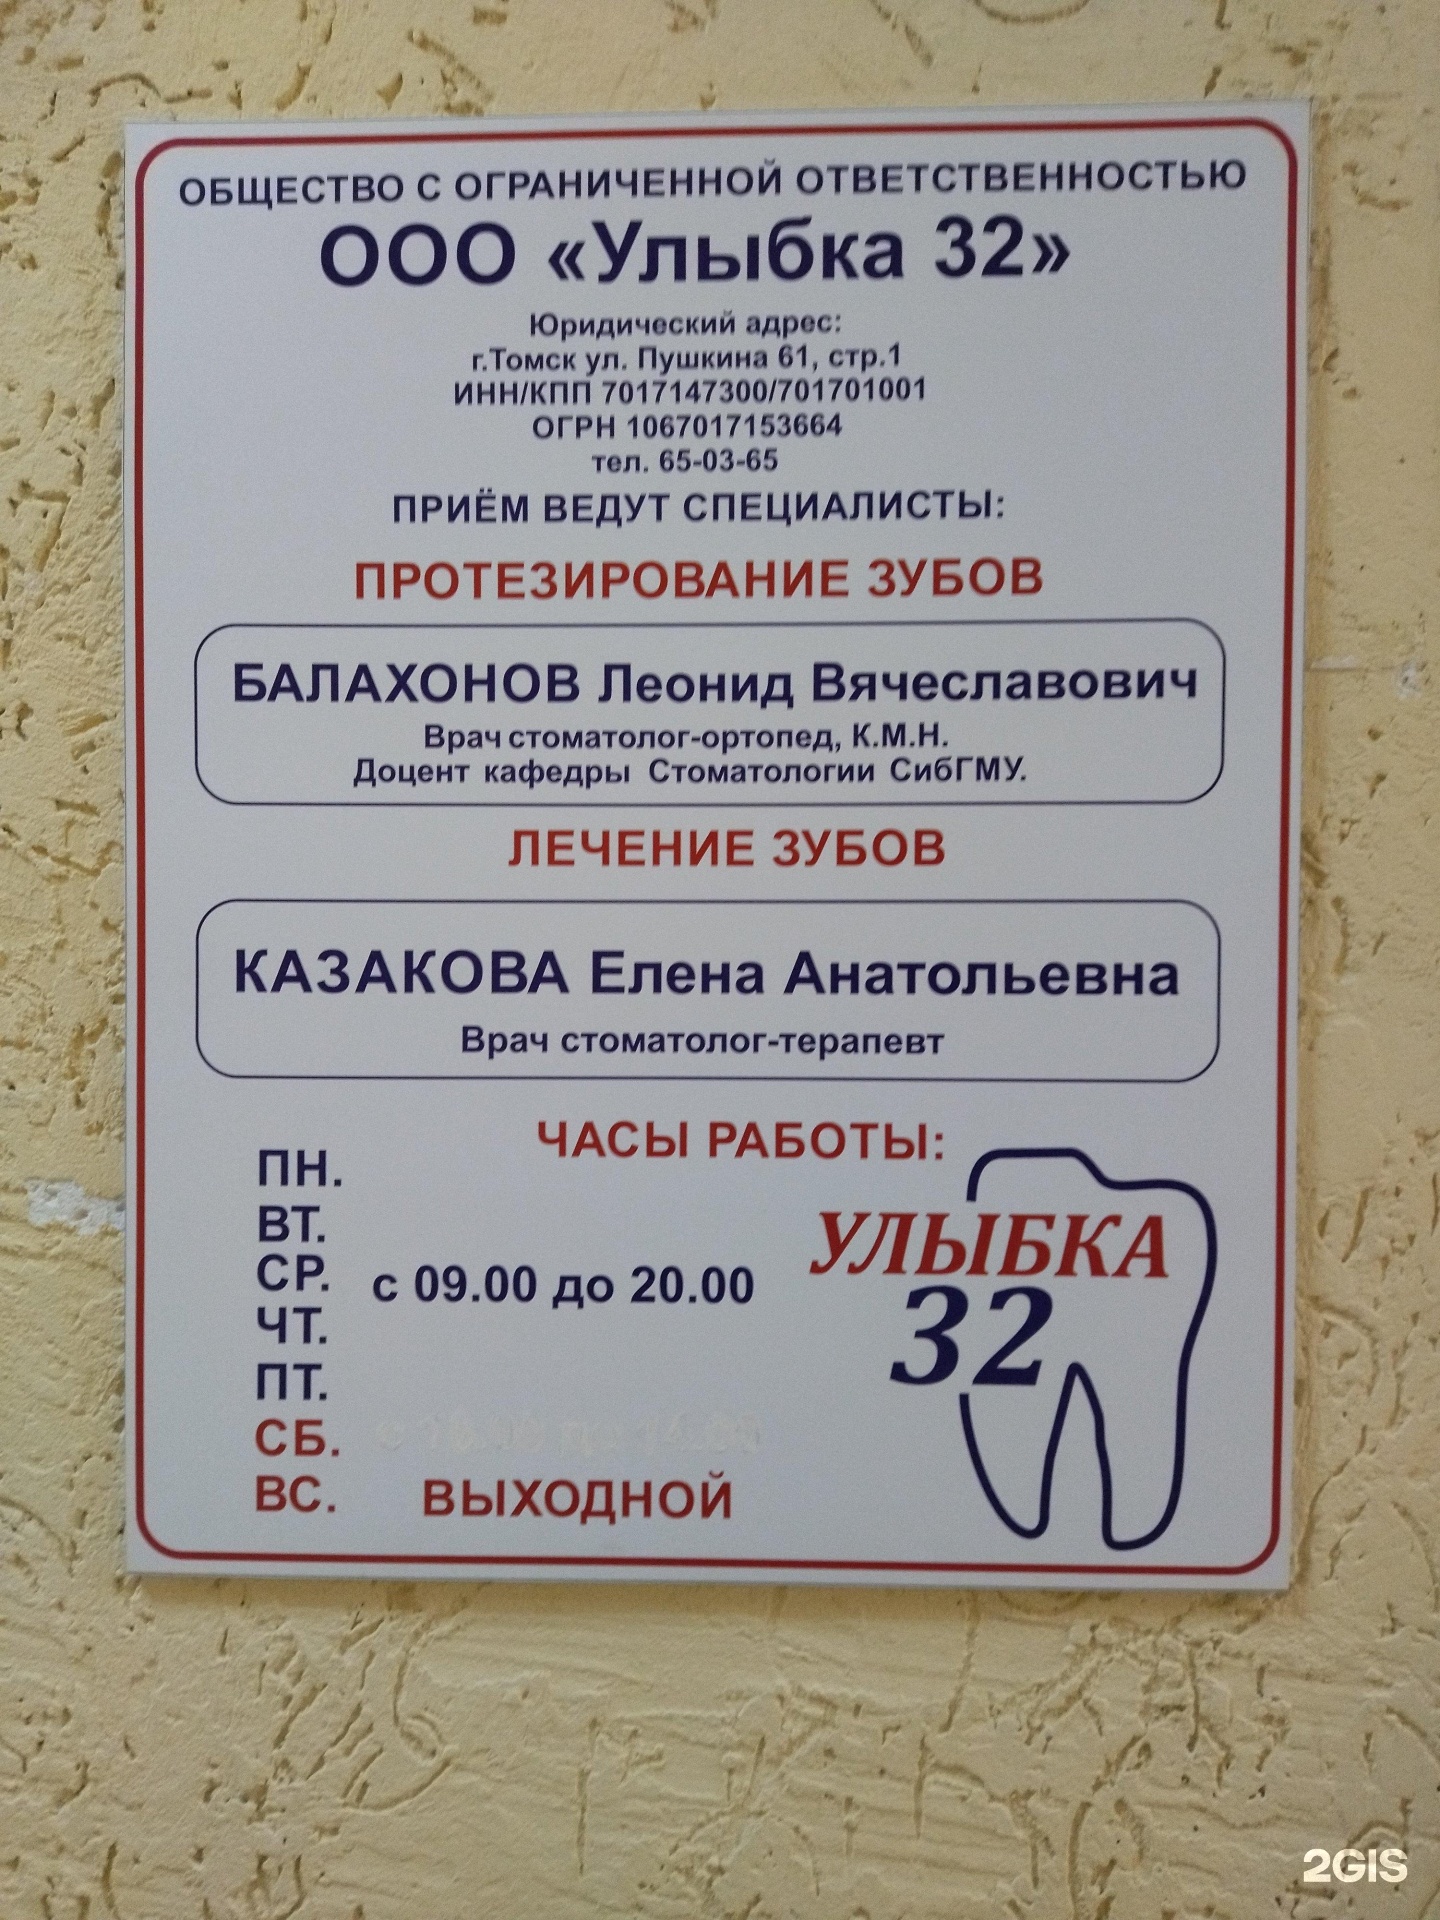 Улыбка 32 томск стоматология Наращивание зубов Томск Краснознаменный